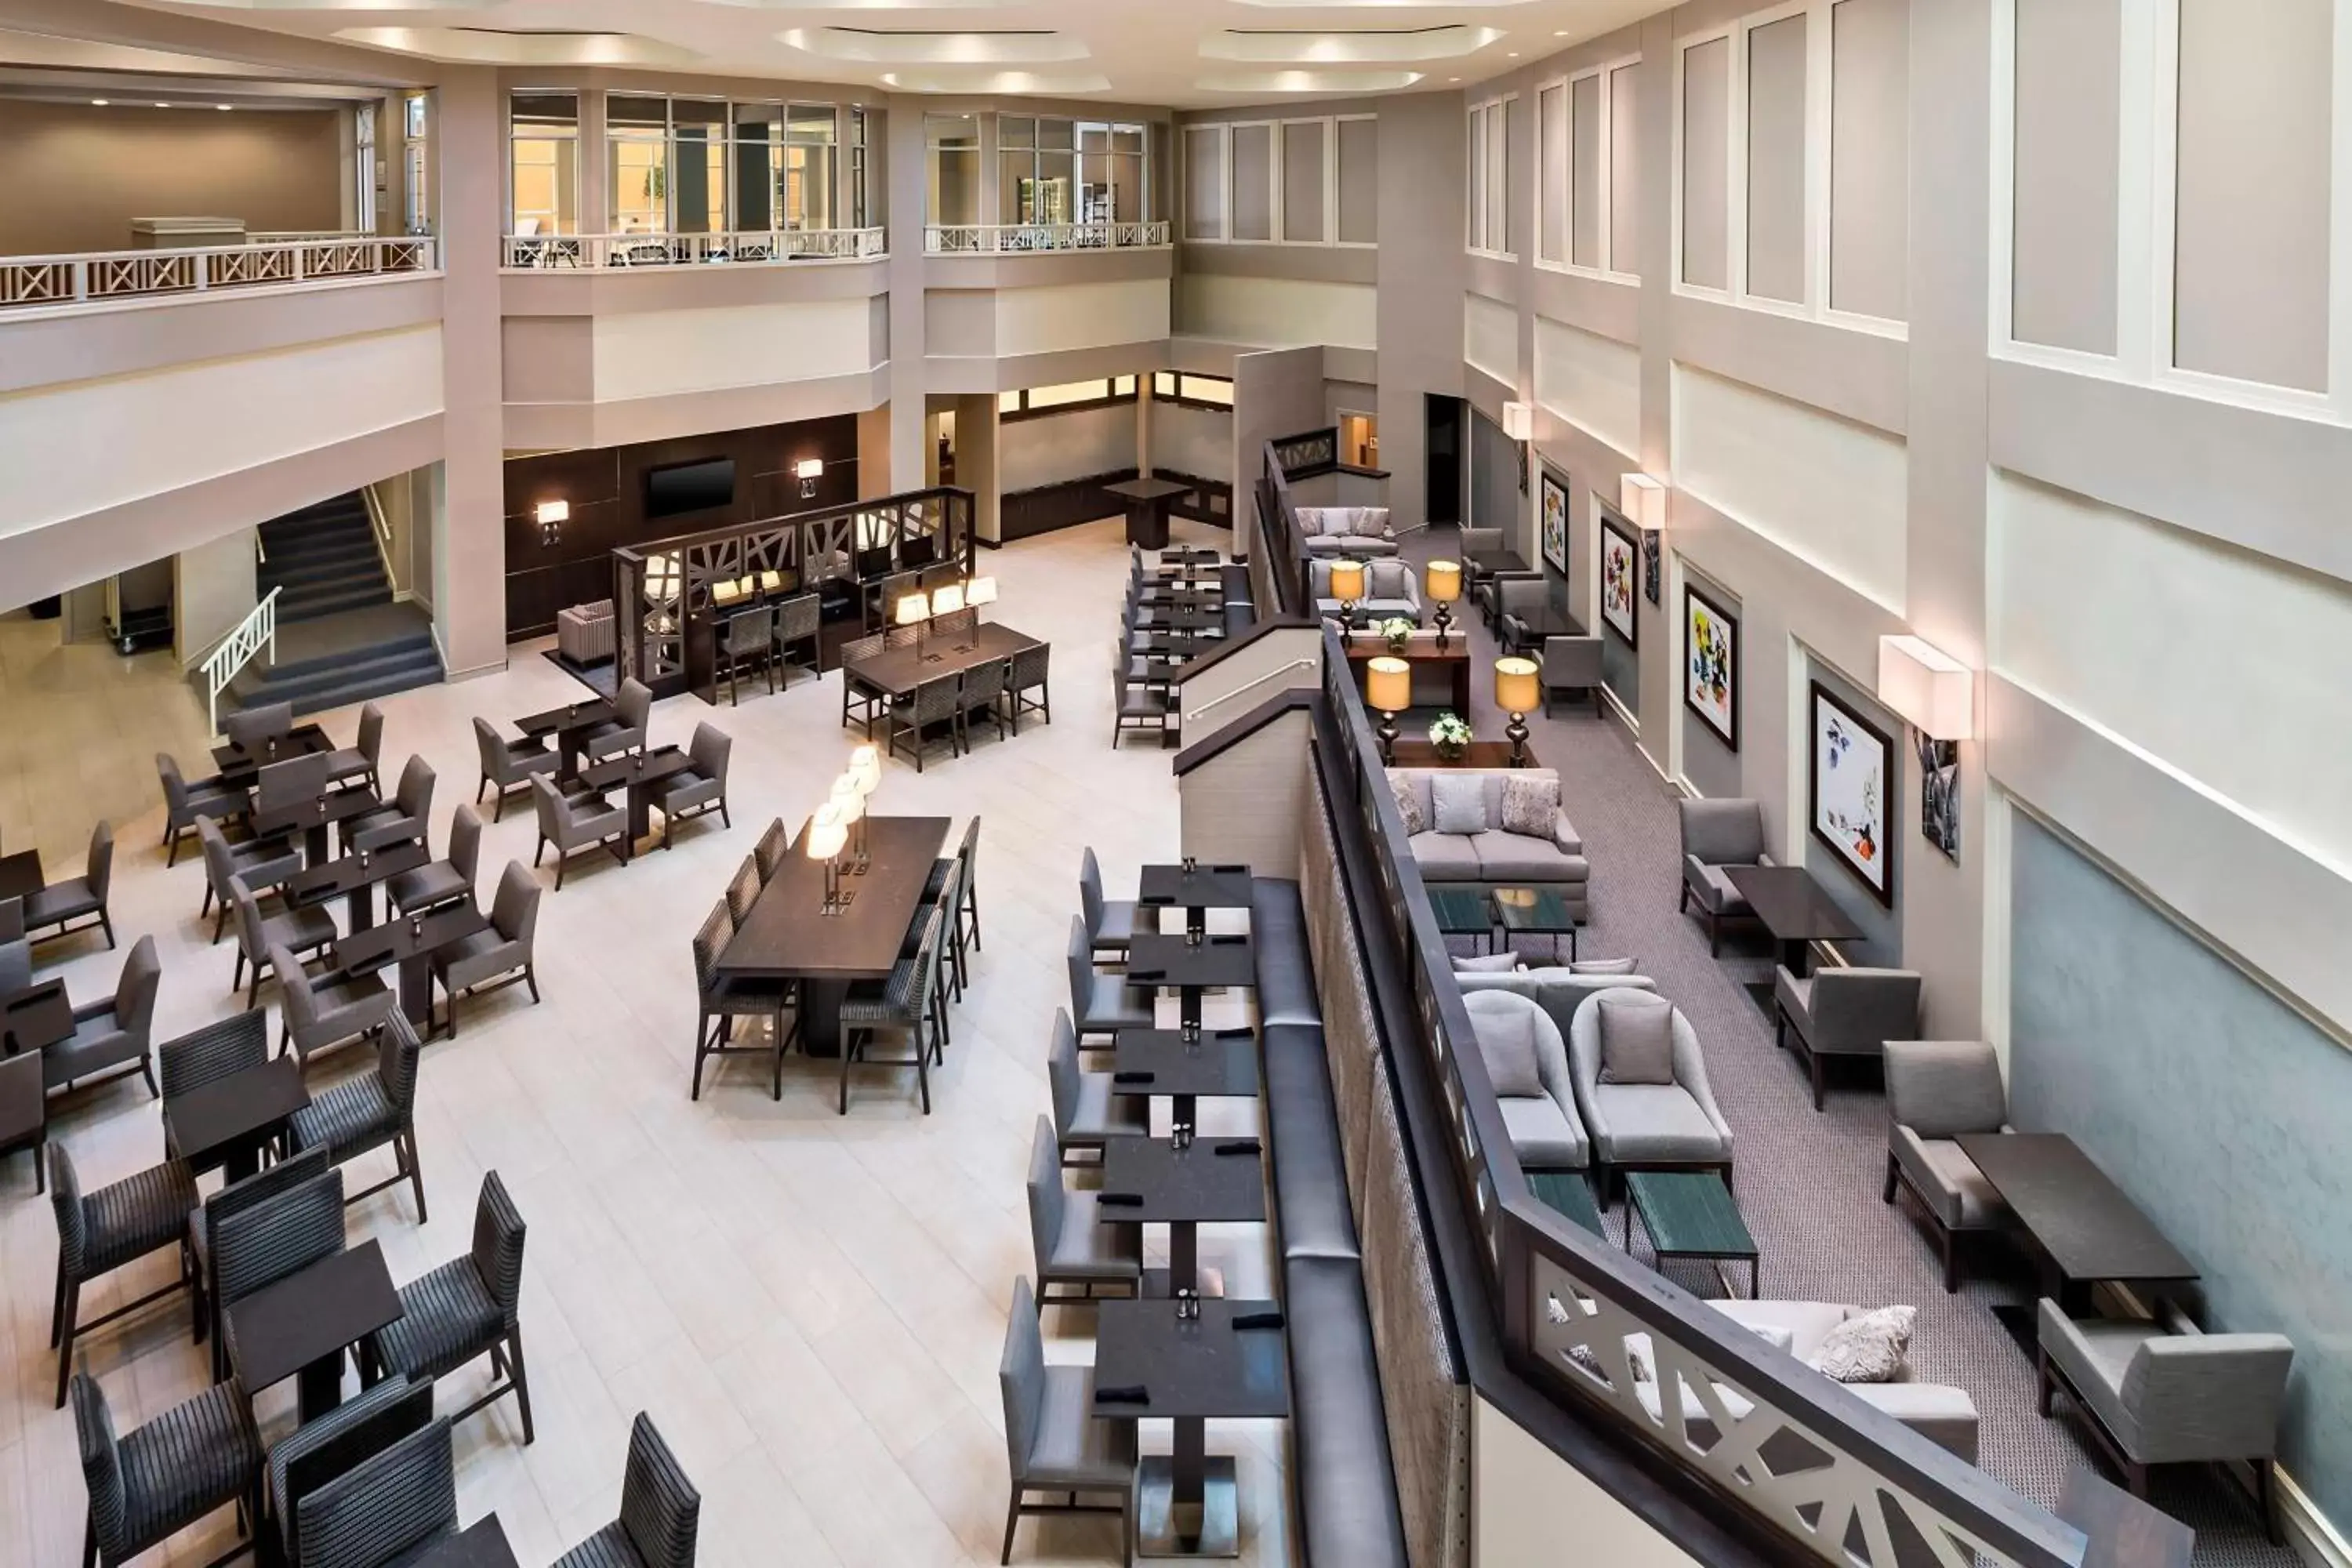 Lobby or reception in Sheraton Suites Galleria Atlanta